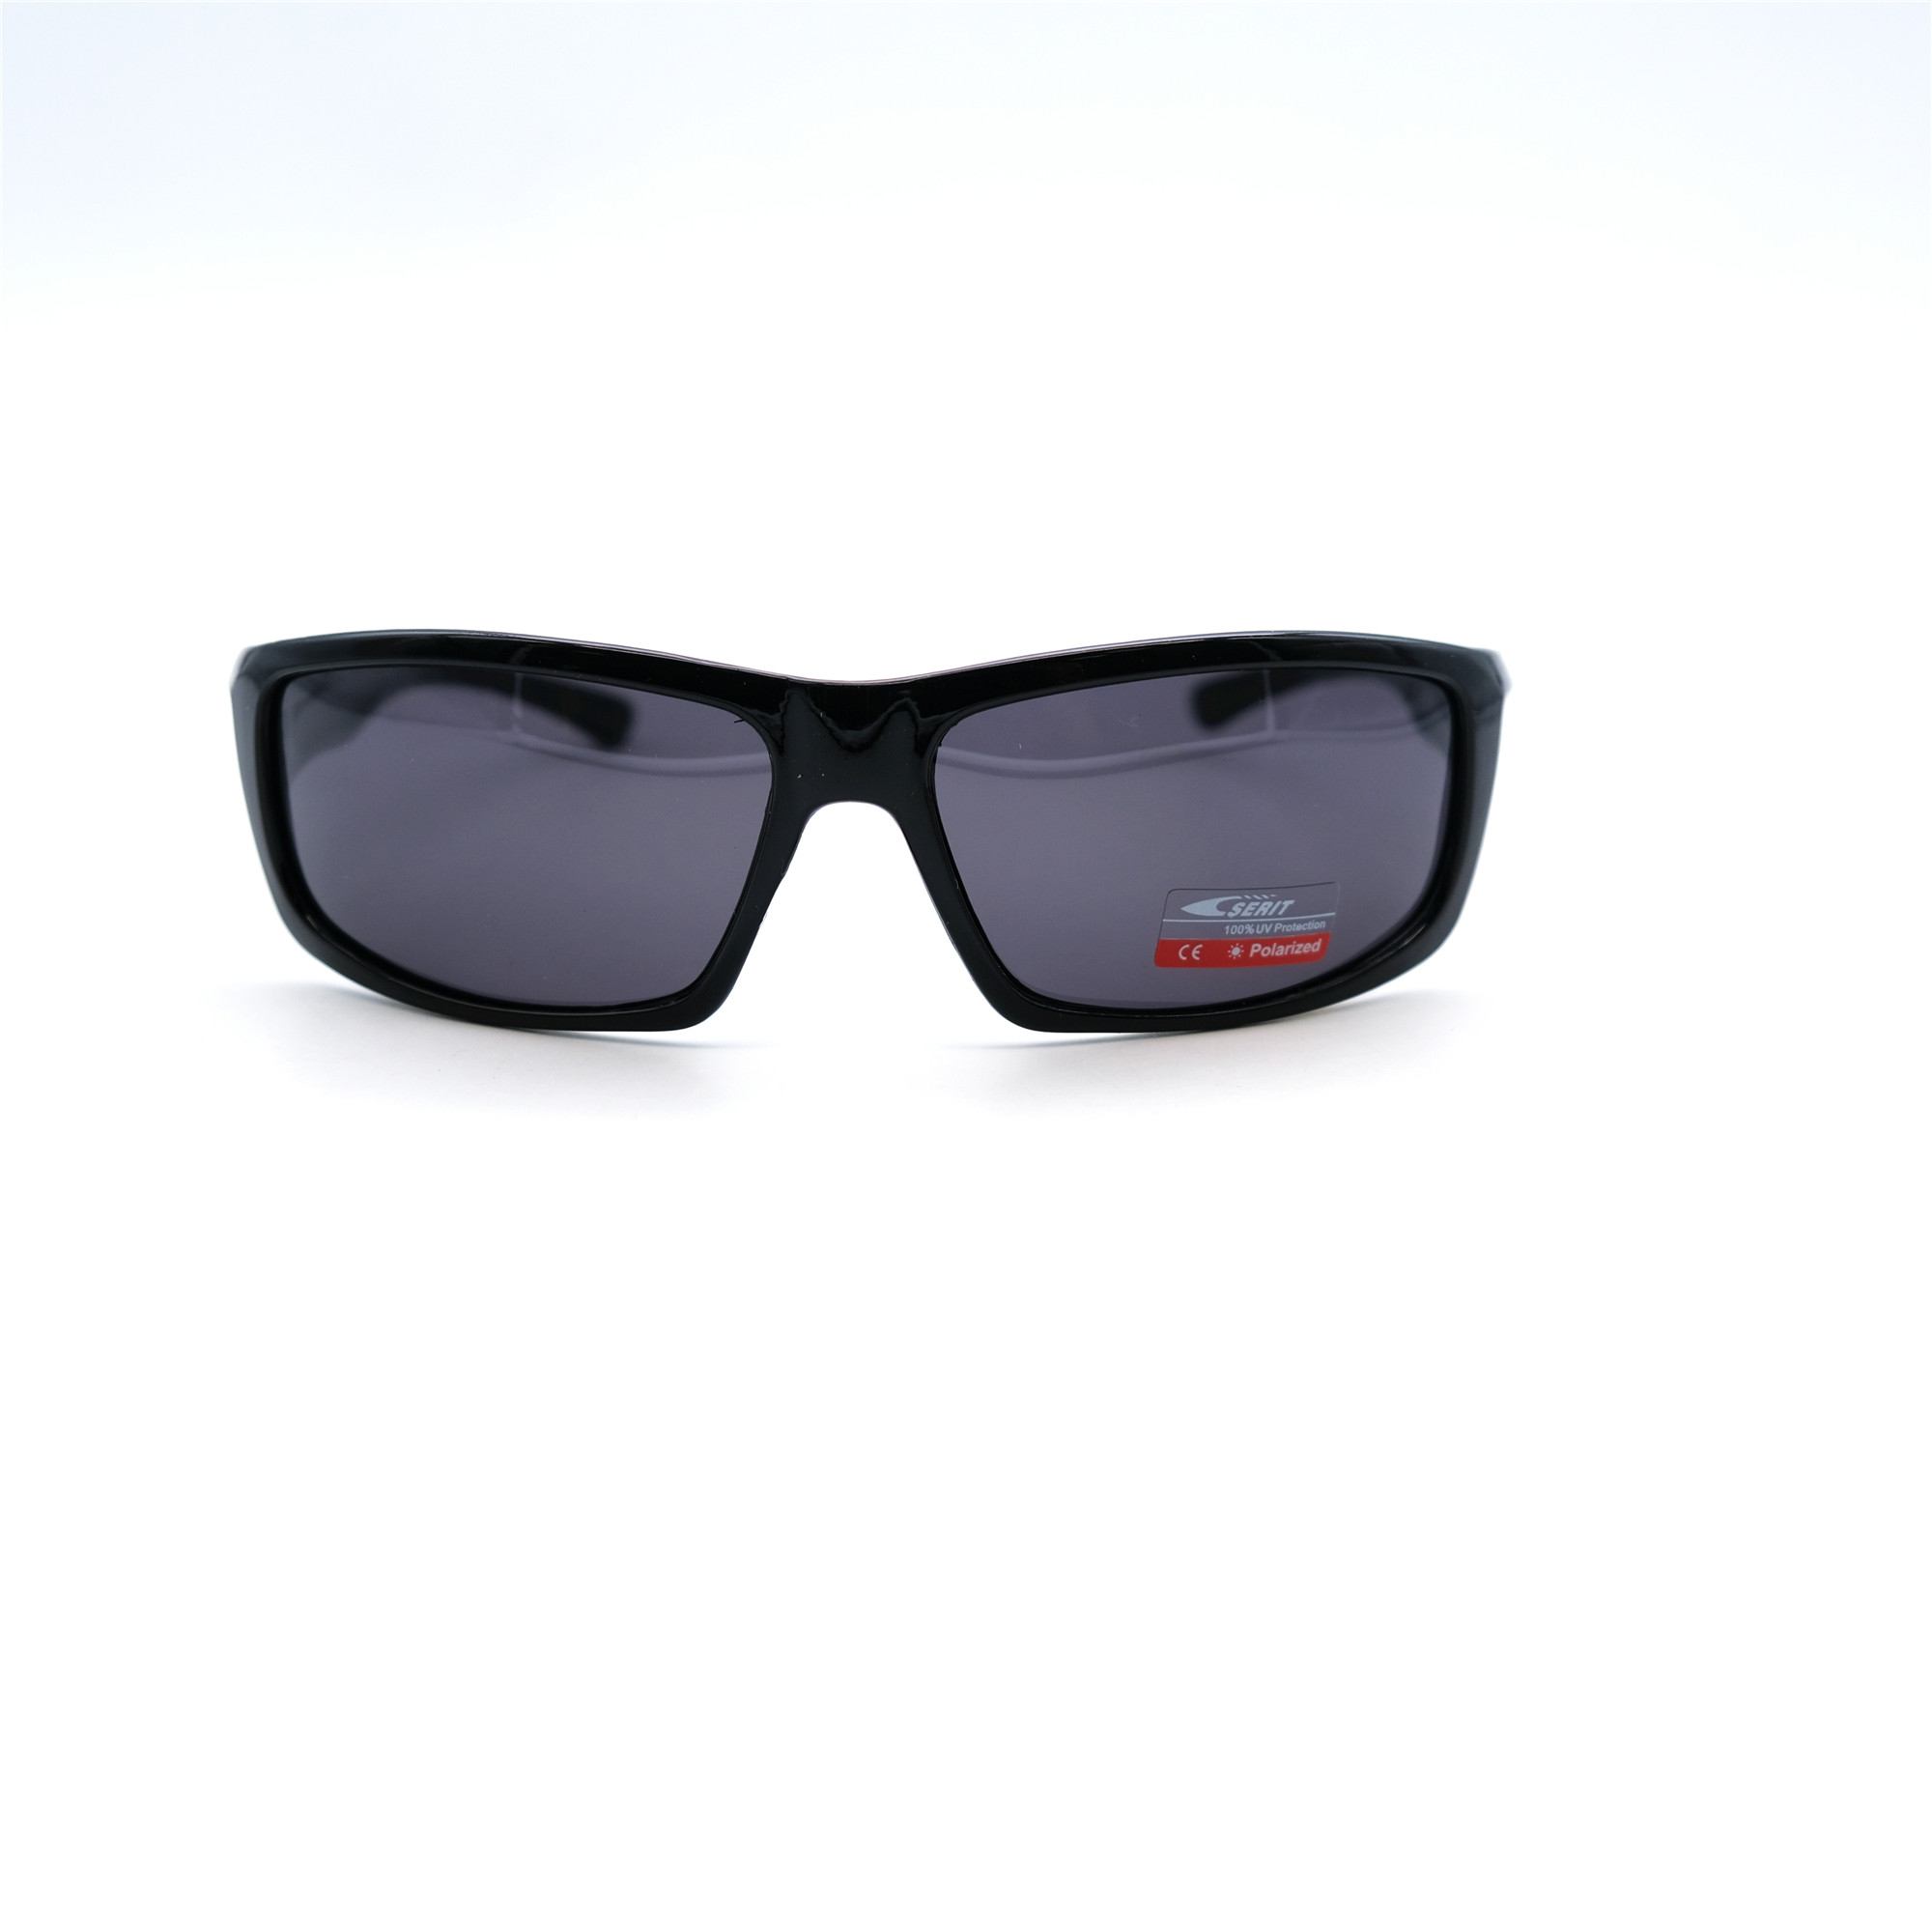  Солнцезащитные очки картинка Мужские Serit Polarized Спорт SP318-C1 